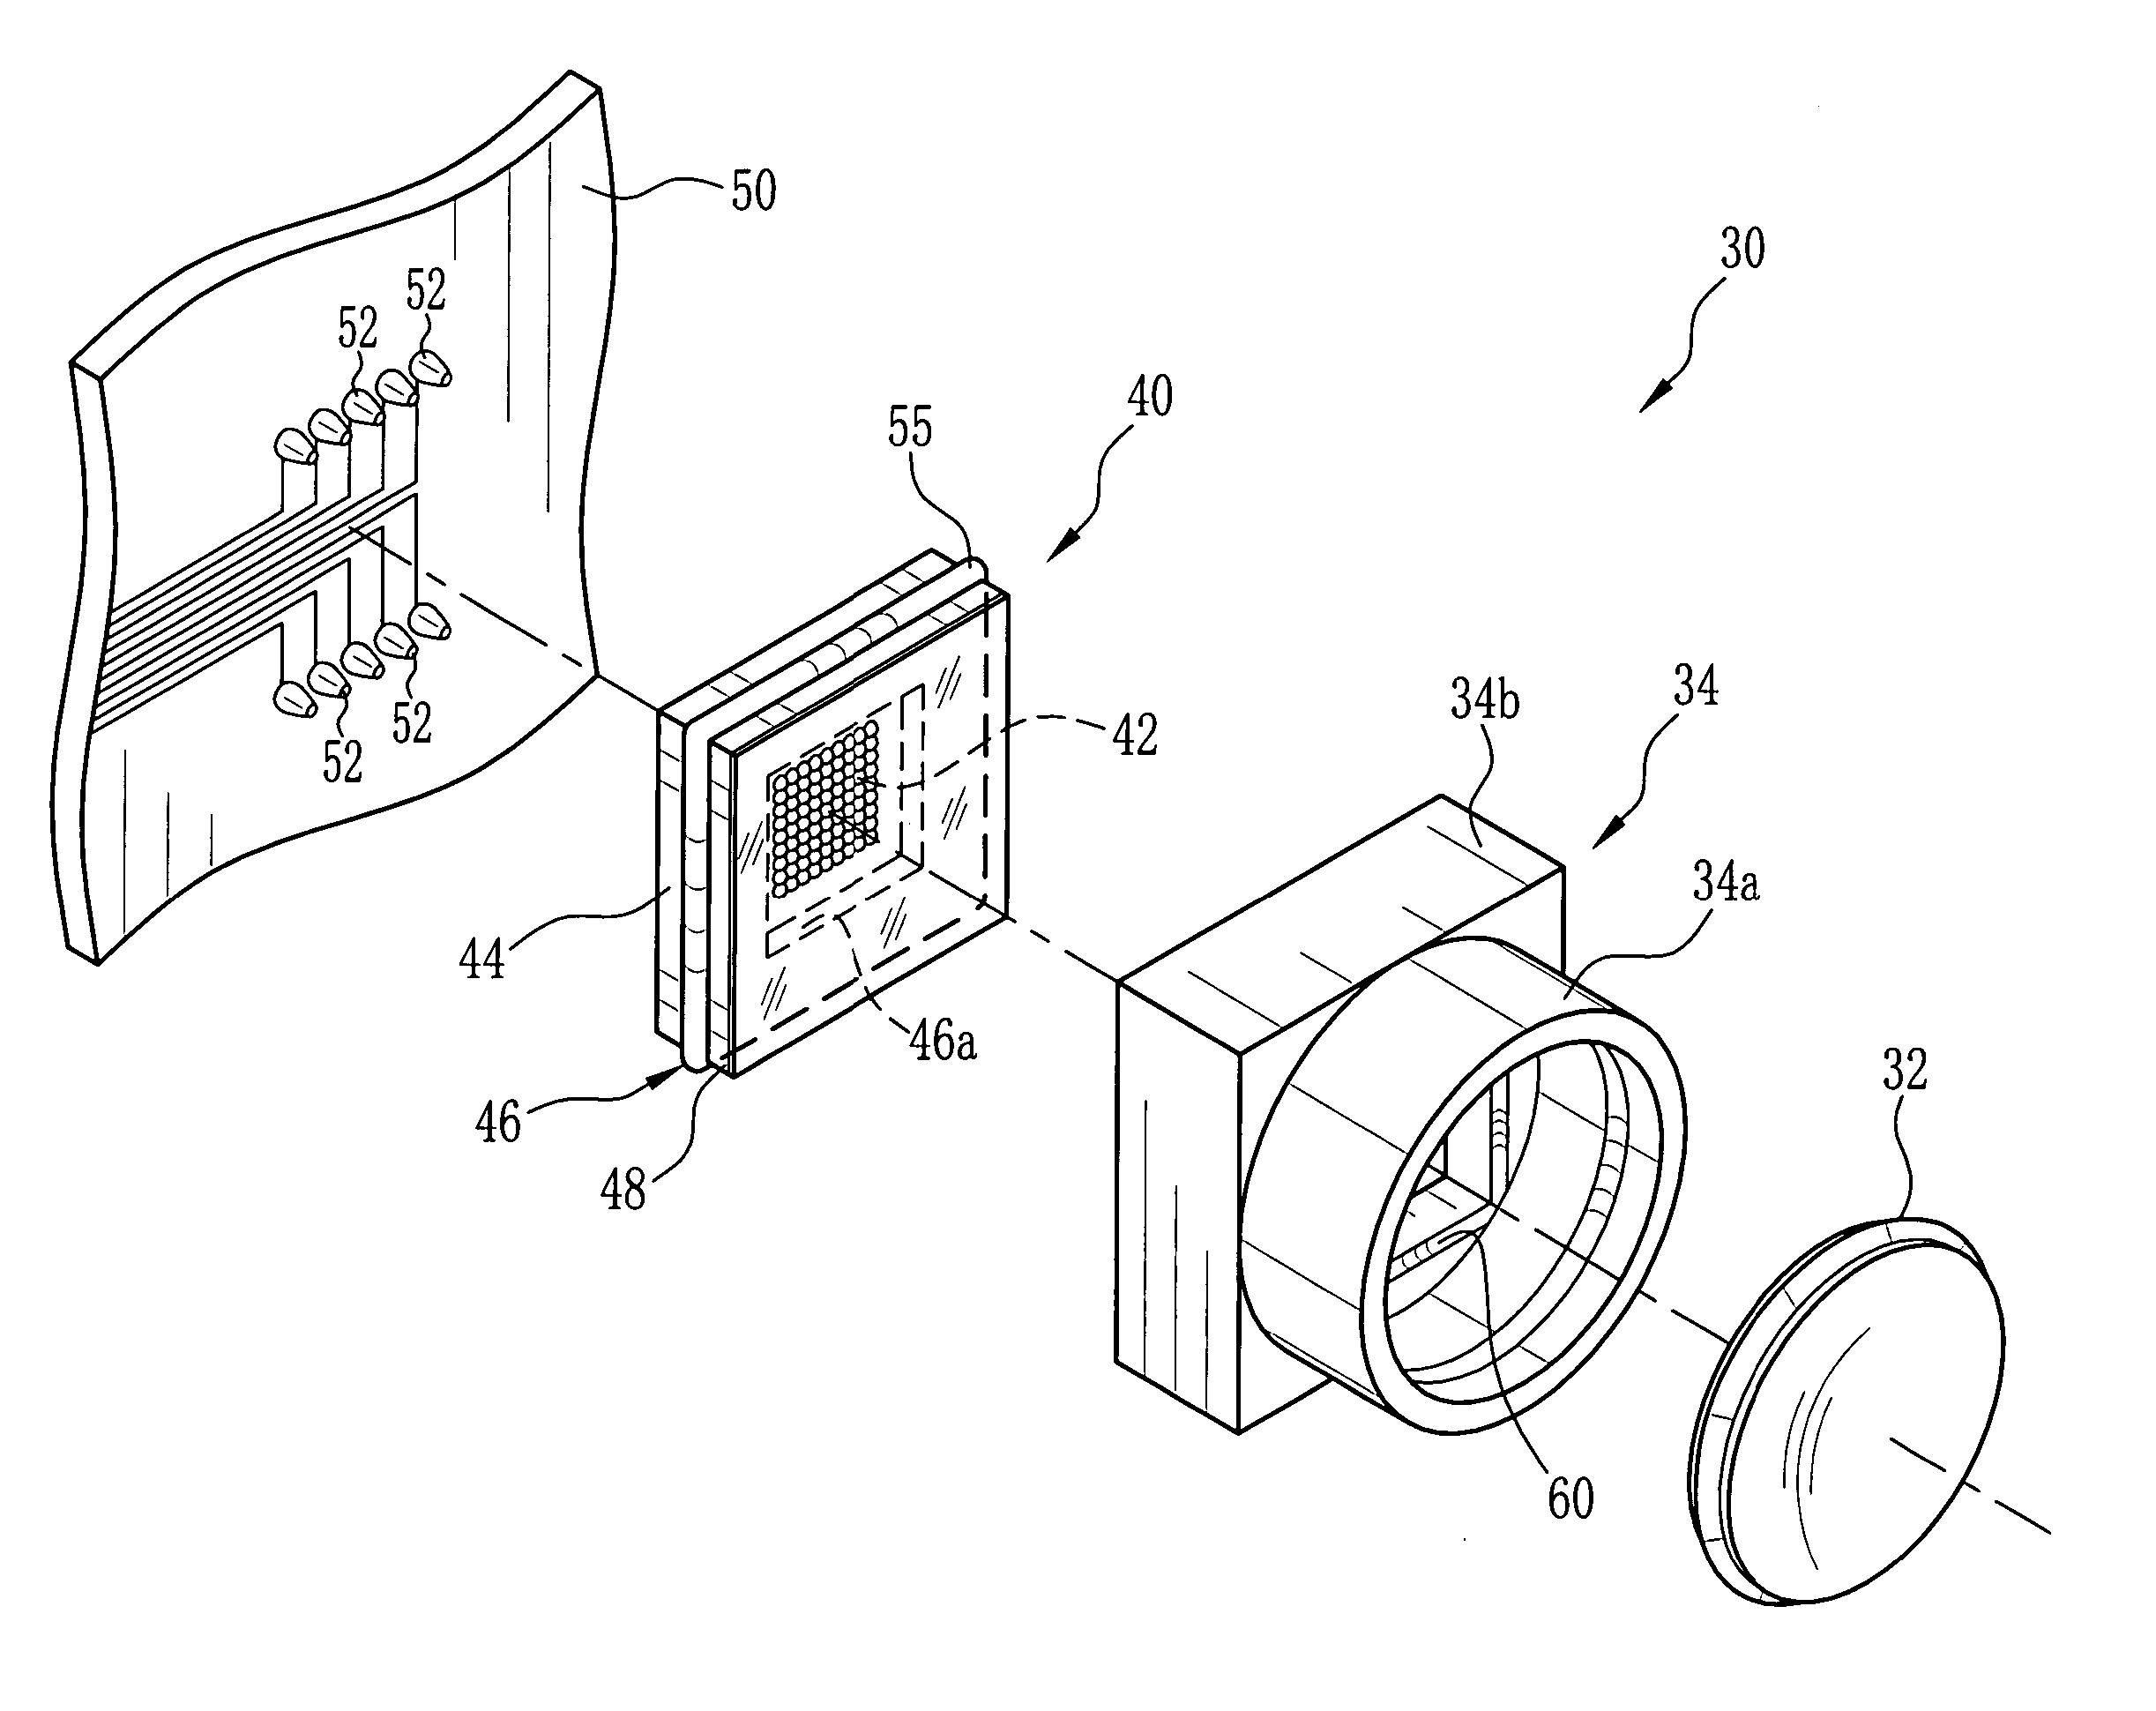 Image capture apparatus